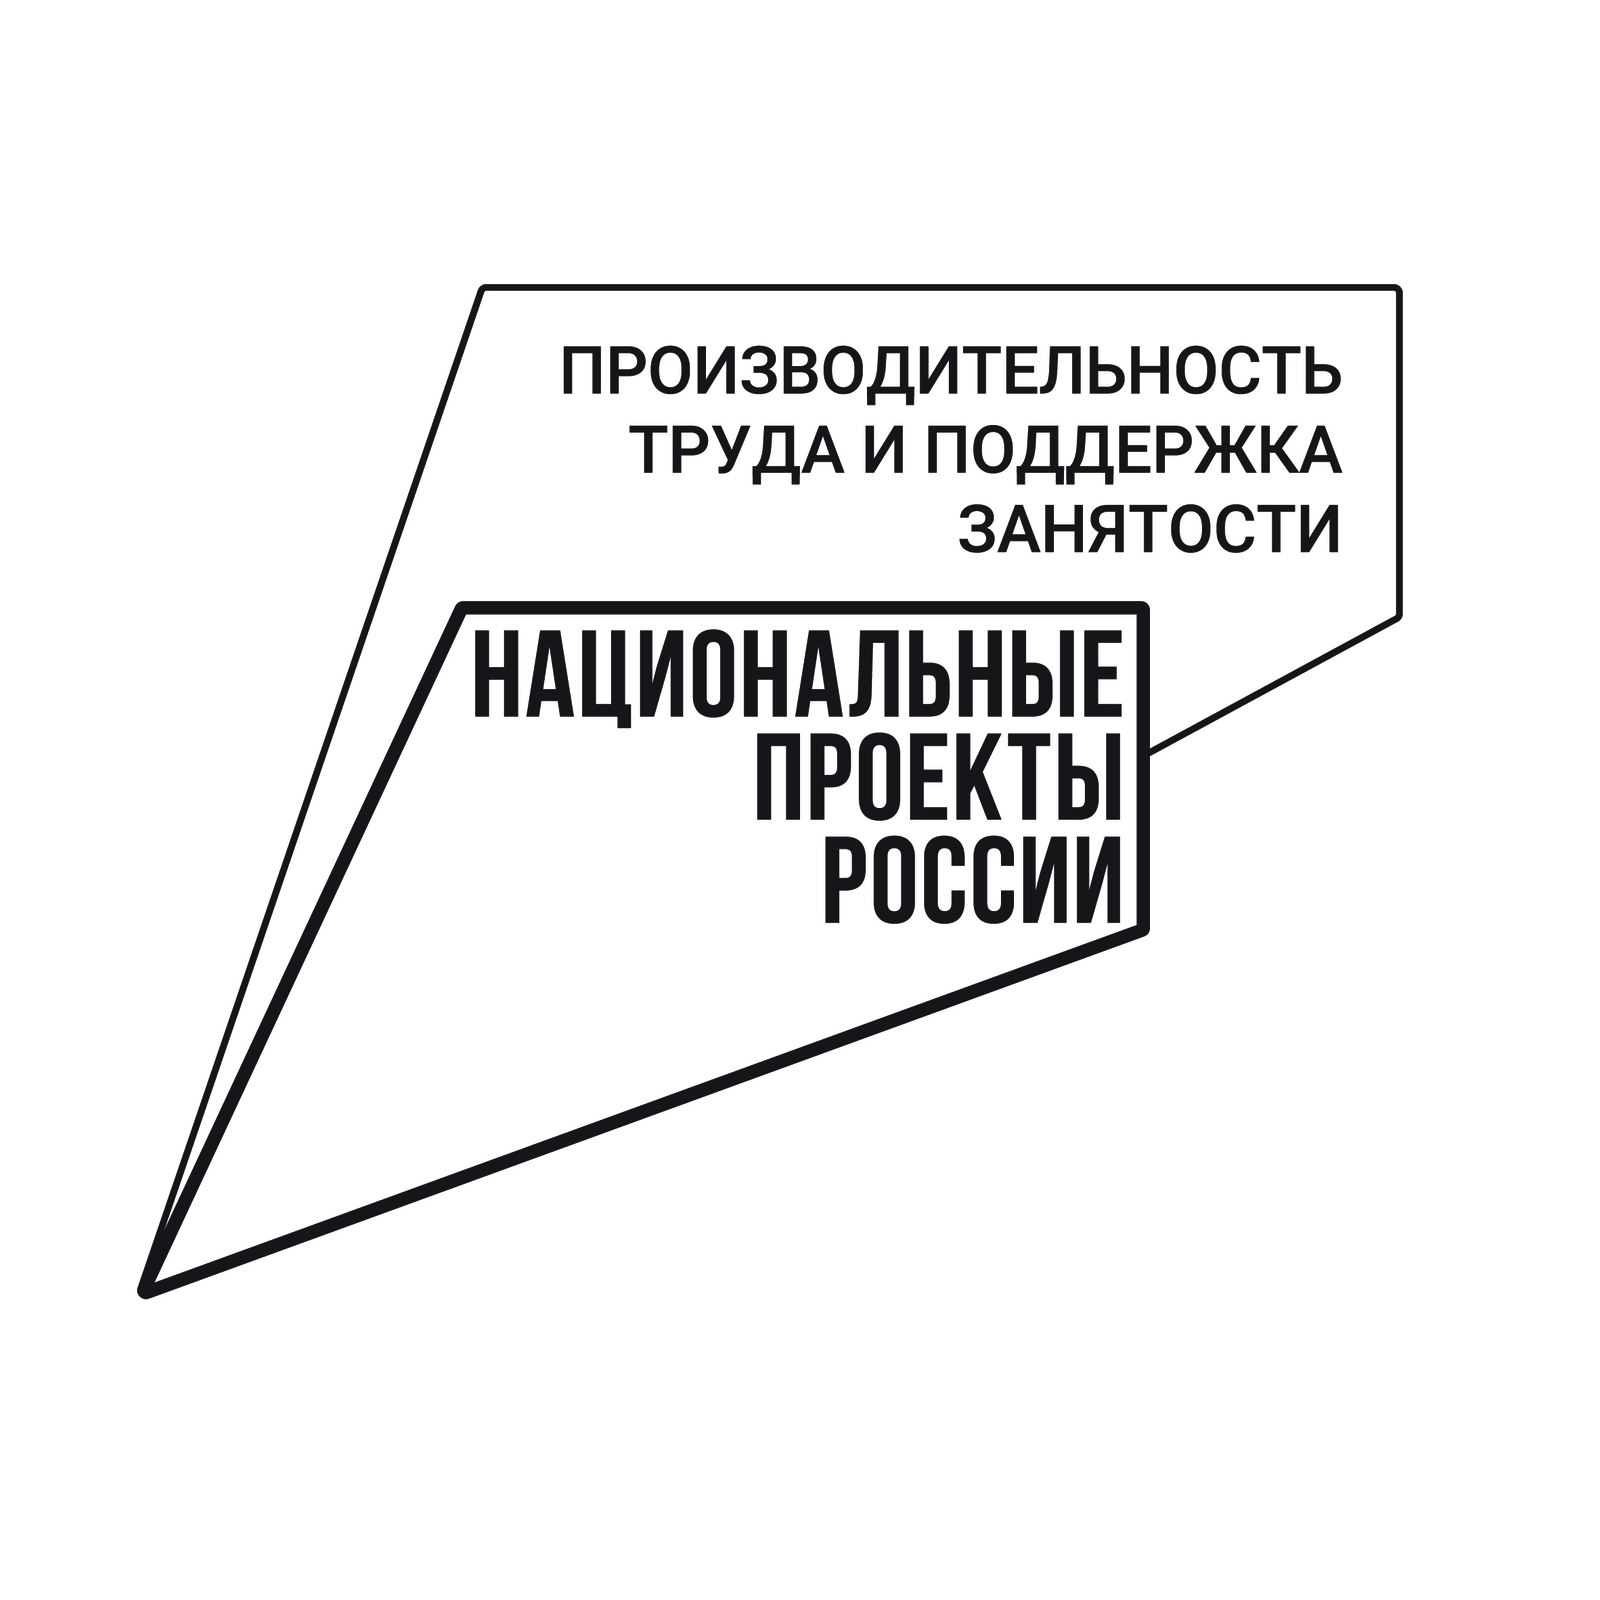 В Башкортостане 140 предприятий стали участниками нацпроекта «Производительность труда»